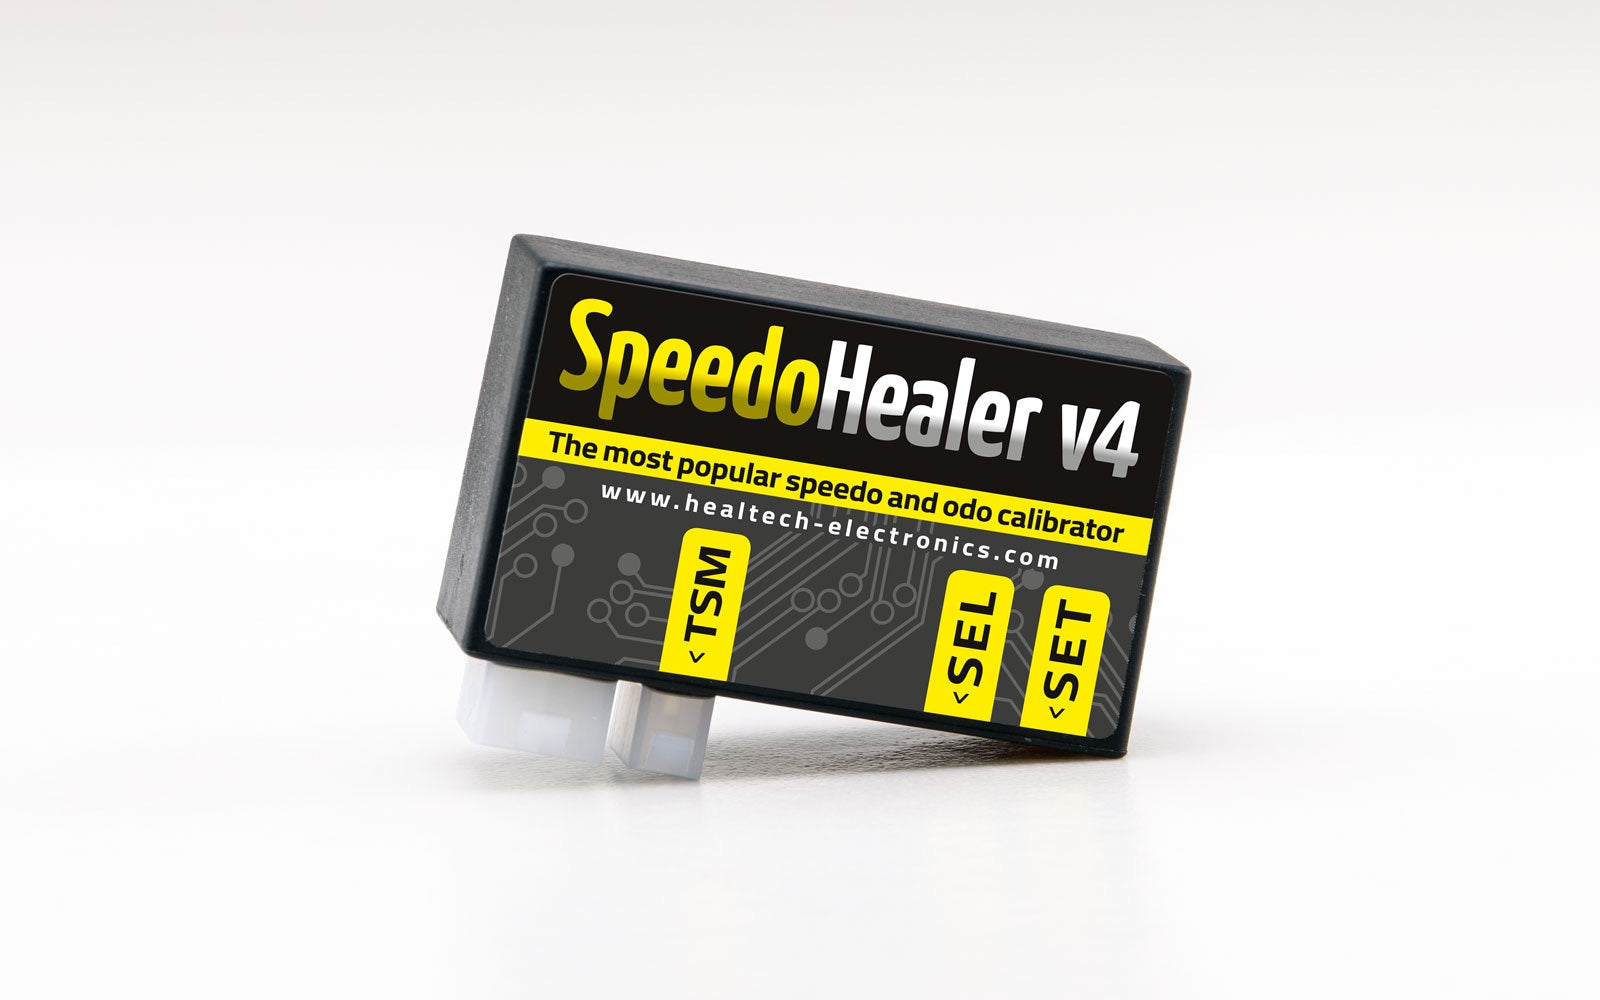 Speedo Healer V4 - Harley Davidson - Averys Motorcycles